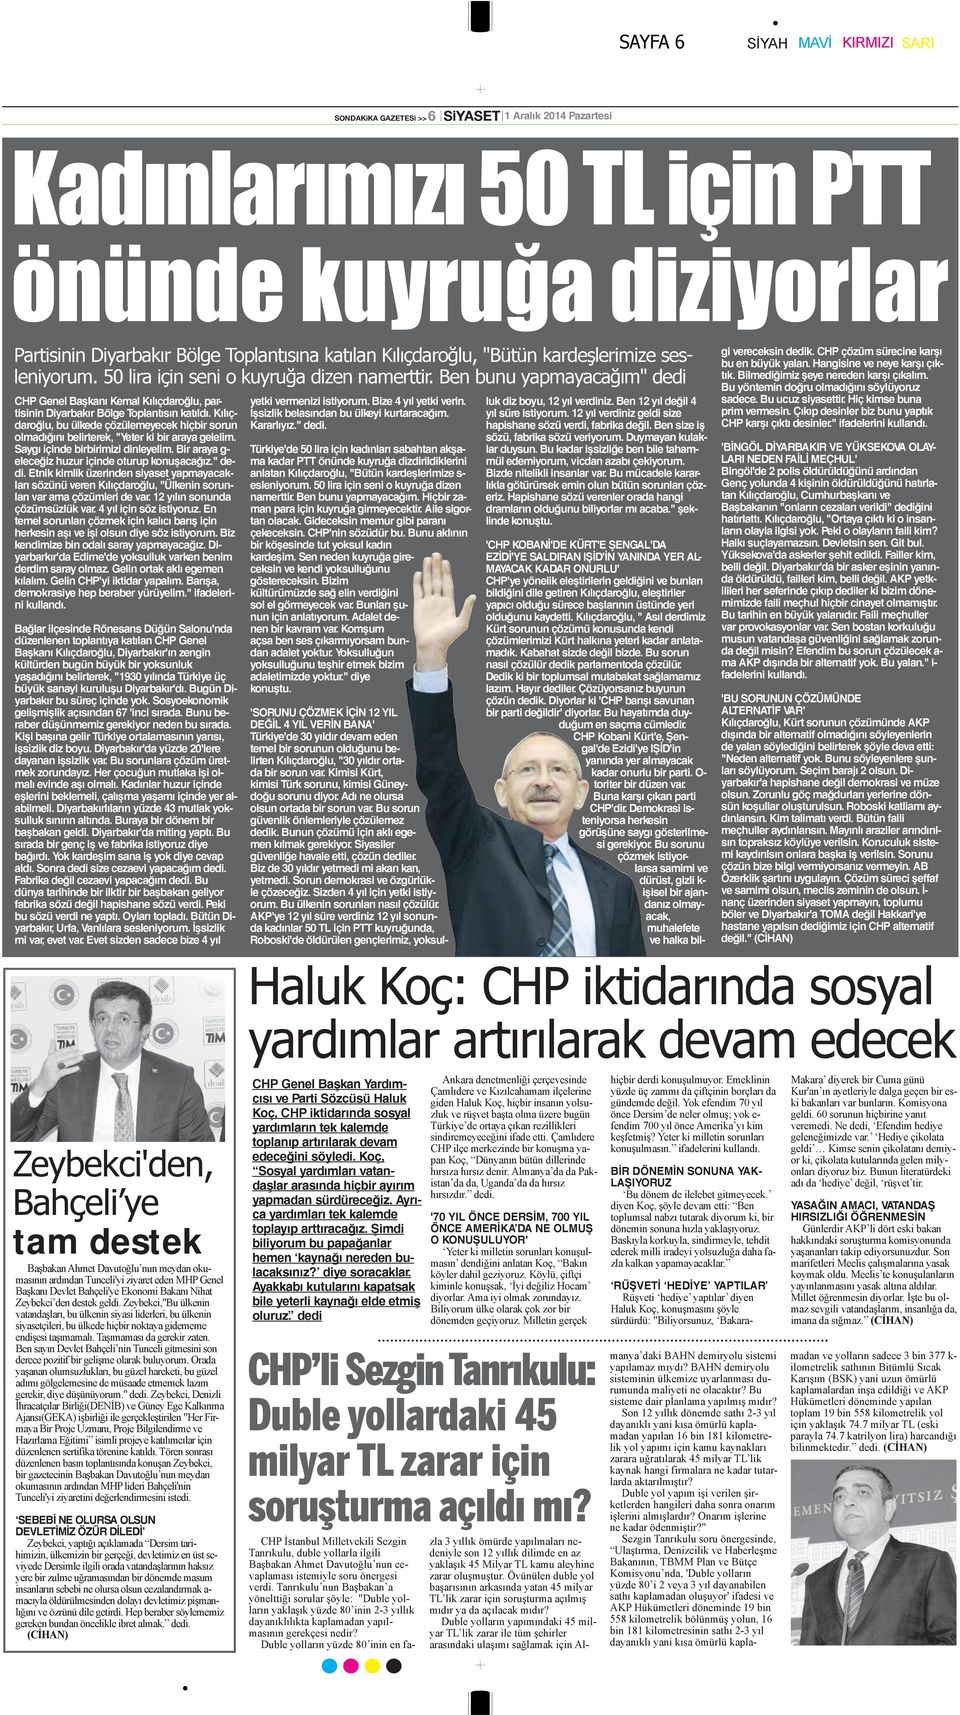 Ben bunu yapmayacağım" dedi CHP Genel Başkanı Kemal Kılıçdaroğlu, partisinin Diyarbakır Bölge Toplantısın katıldı.